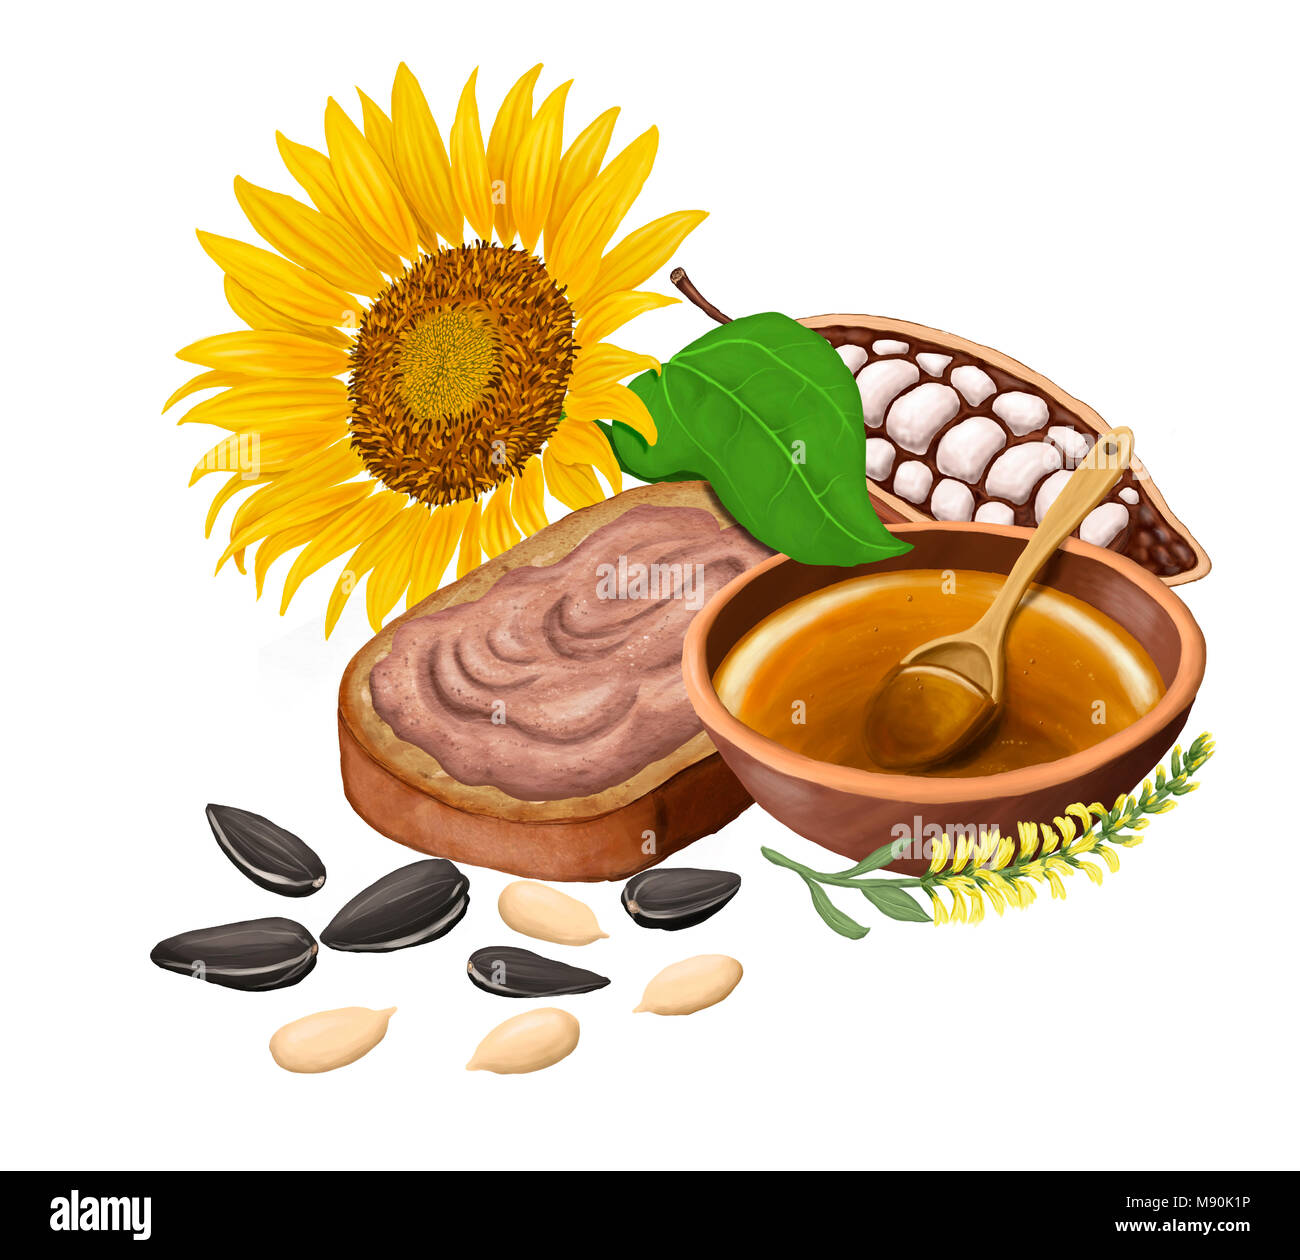 Girasol, pan con chocolate, pasta de cacao, miel y semillas de girasol.  Aislado en blanco. Ilustración de raster Fotografía de stock - Alamy